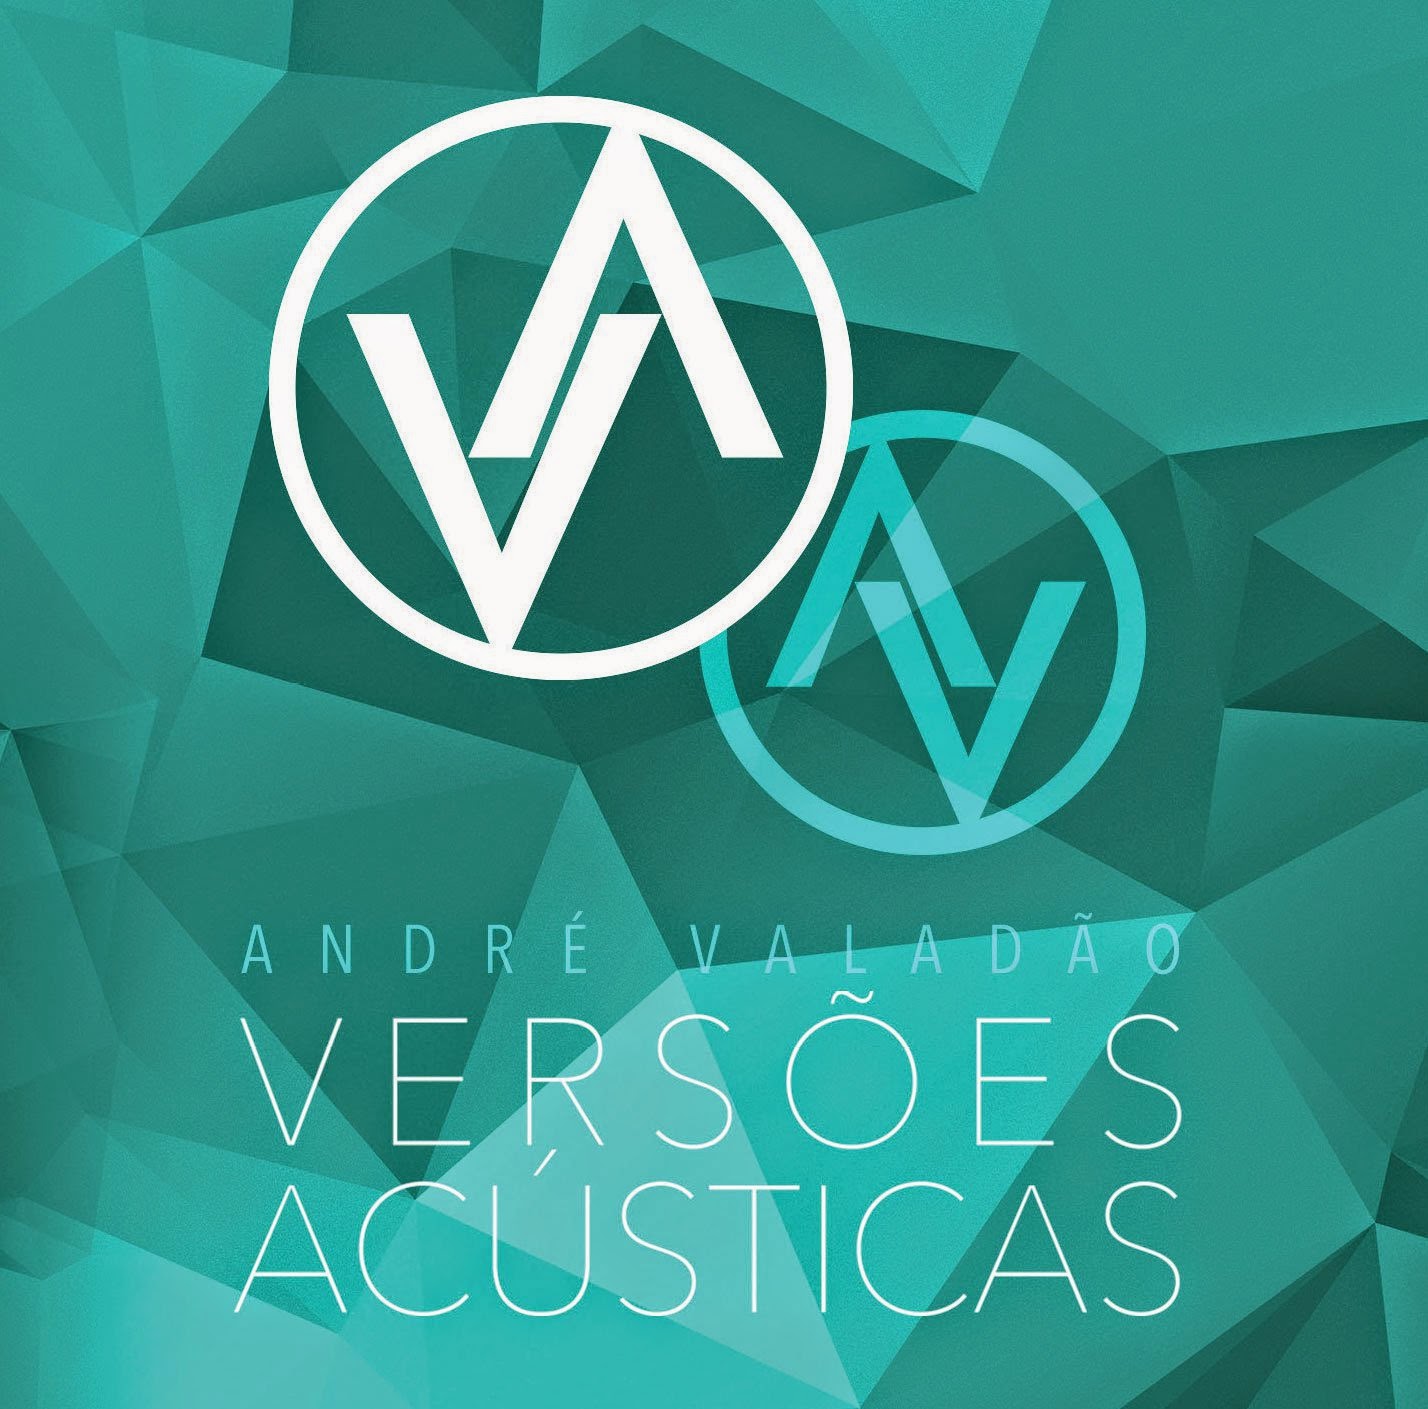 CD de André Valadão tem simbolo que lembra a Maçonaria na capa